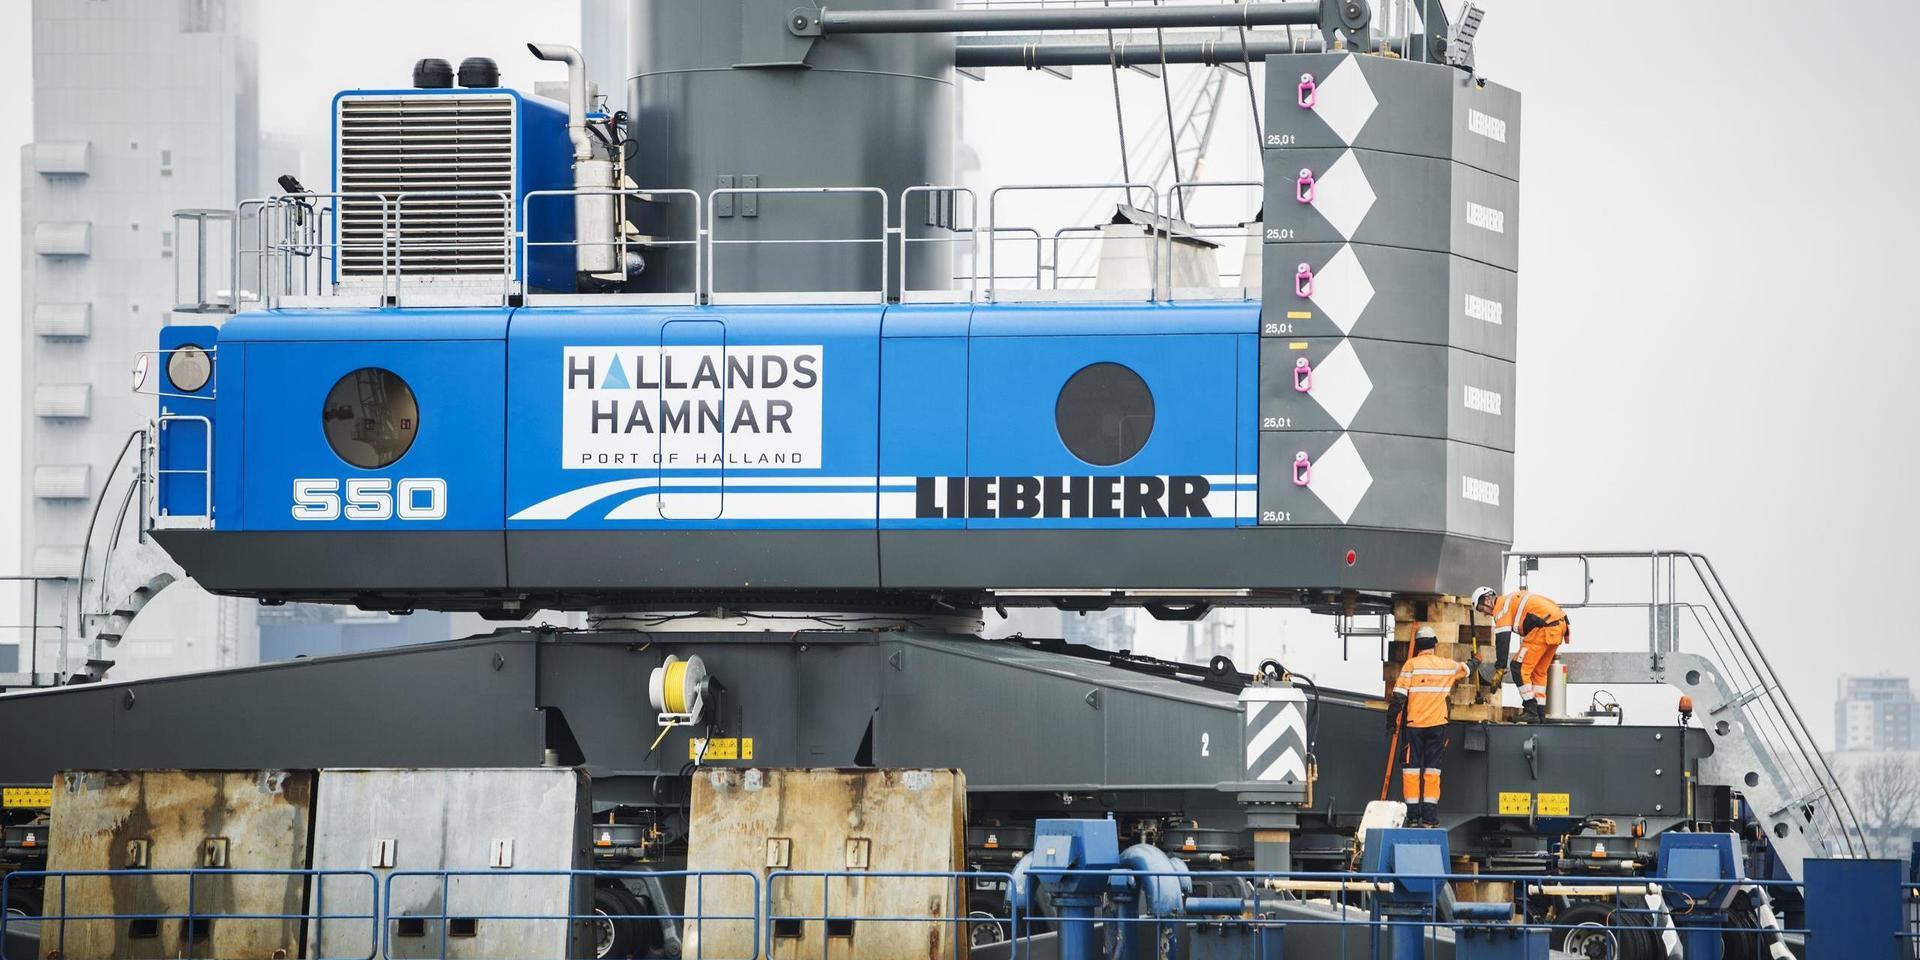 Coronakrisen har inneburit turbulens kring permitteringar på Hallands hamnar, men en medarbetarundersökning visar att missnöjet går längre tillbaka än så.